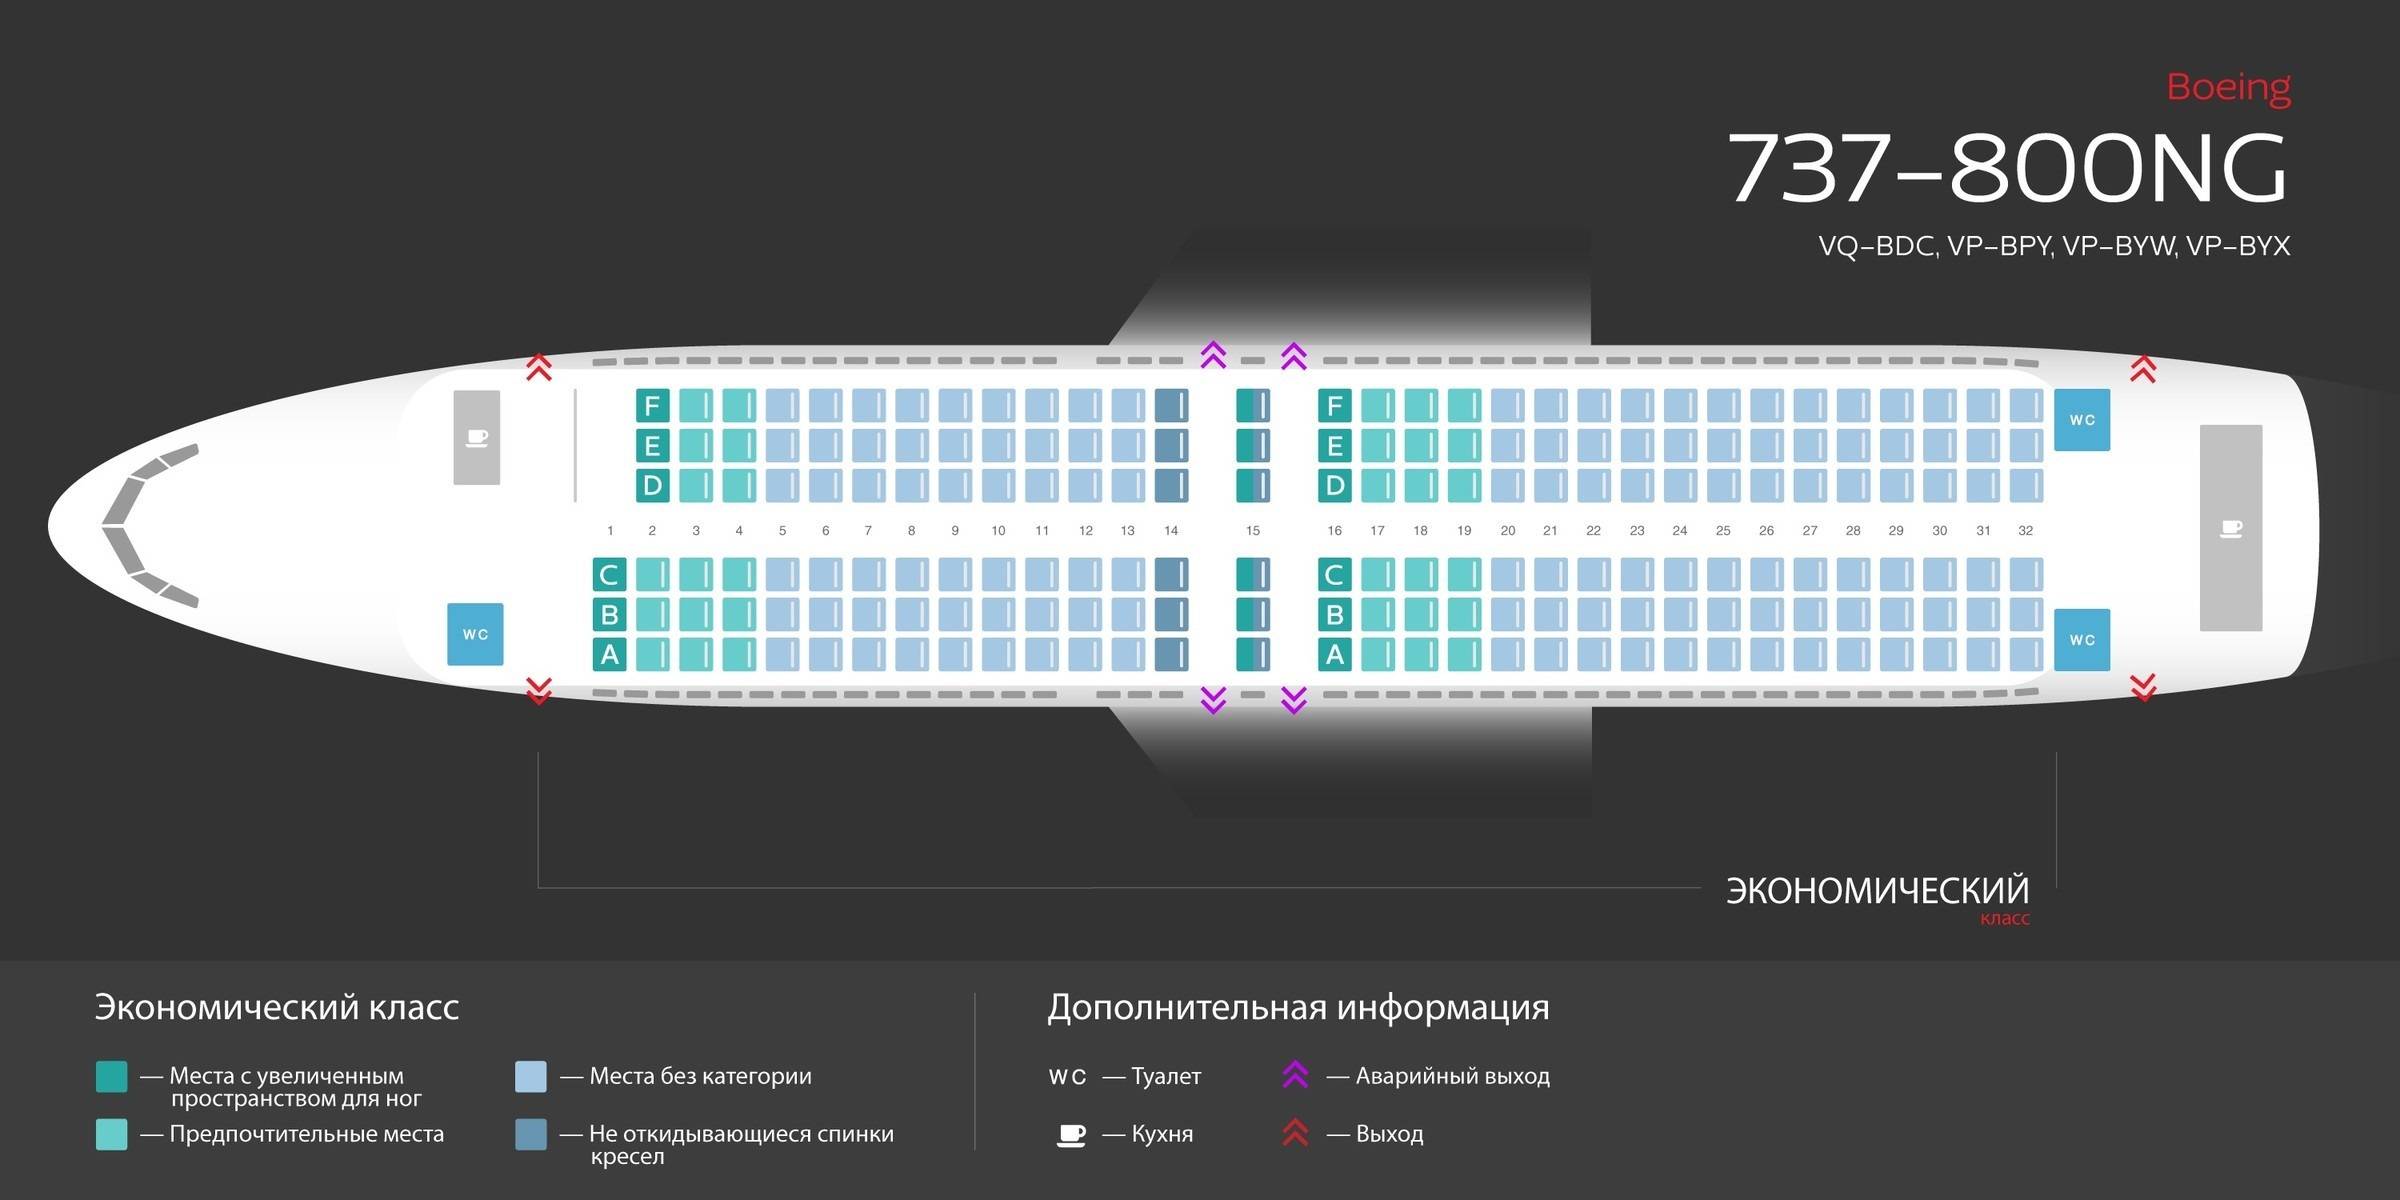 Схема салона и лучшие места boeing 737 800 авиакомпании россия